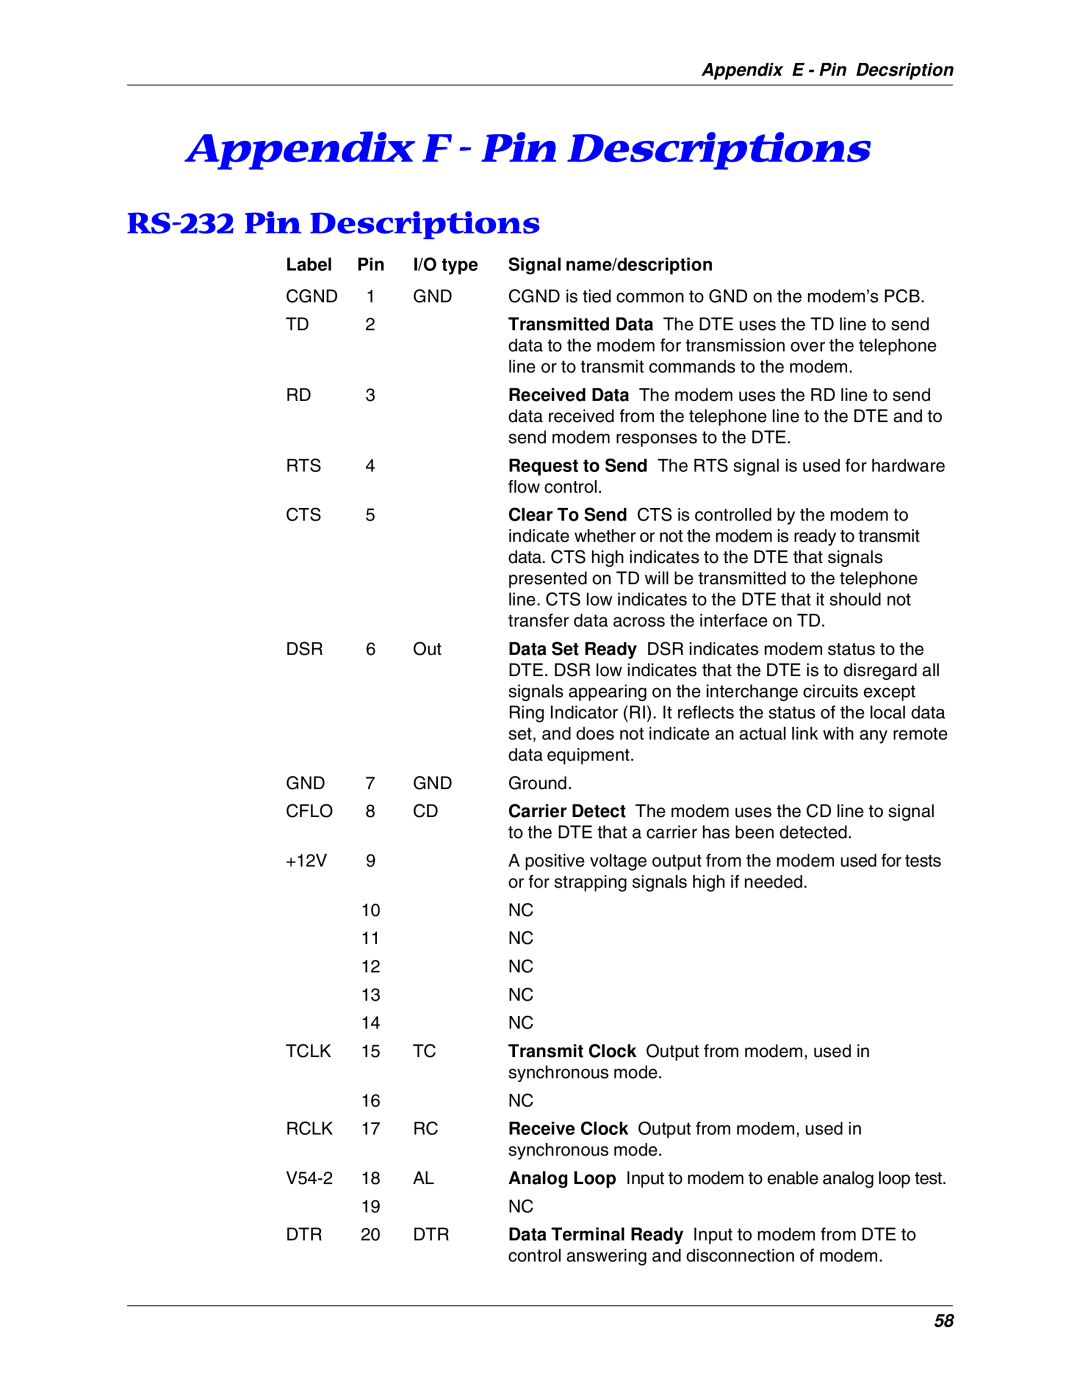 Multitech MT5600BL, MT5600BA manual Appendix F - Pin Descriptions, RS-232 Pin Descriptions 